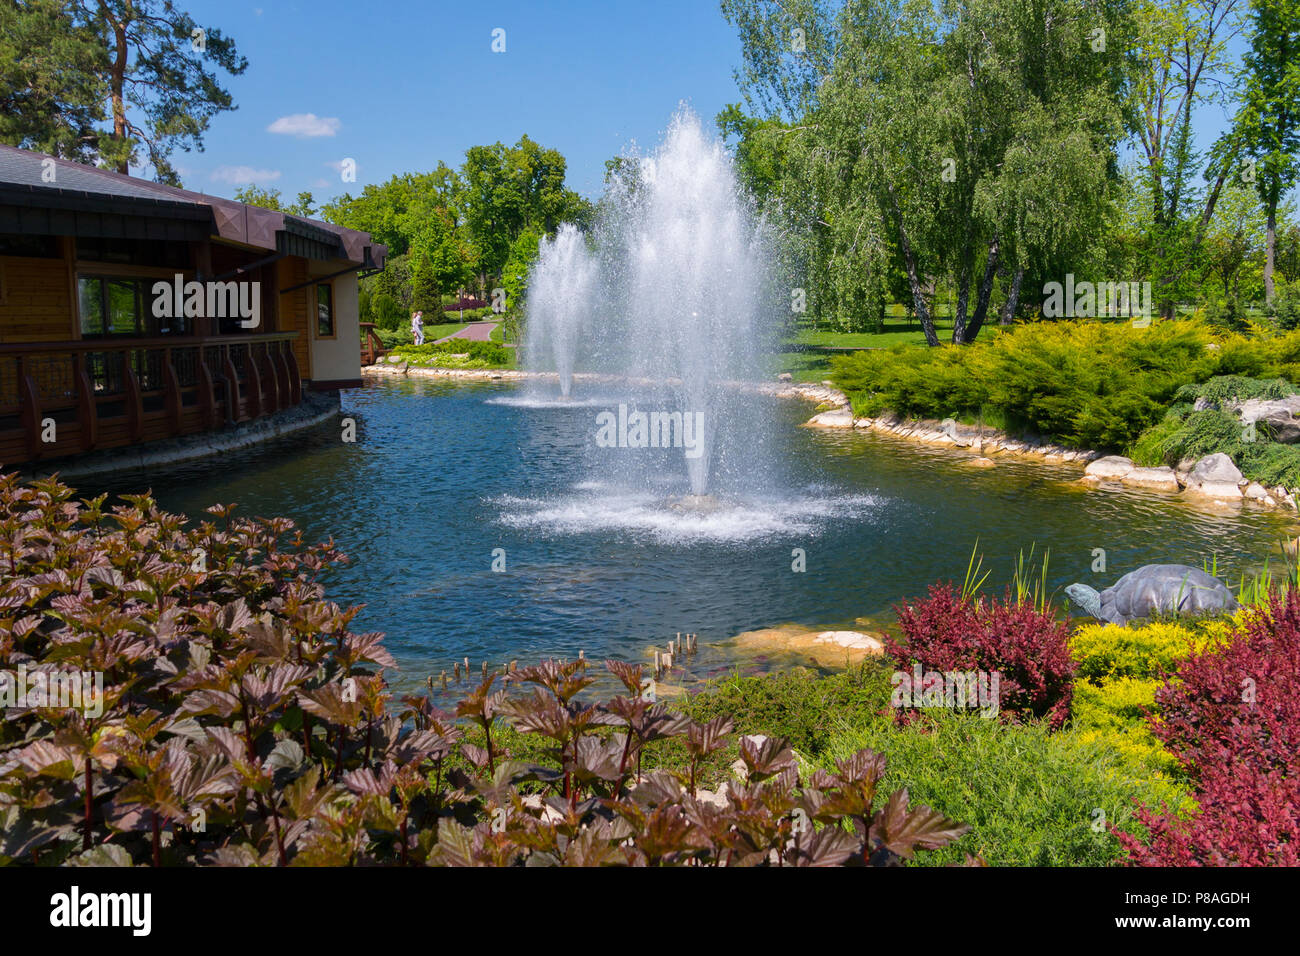 Una terrazza in legno con accesso ad un laghetto con due fontane circondate  da splendidi fiori, cespugli di verde e di alberi di alto fusto sotto un  cielo blu. luogo di riposo